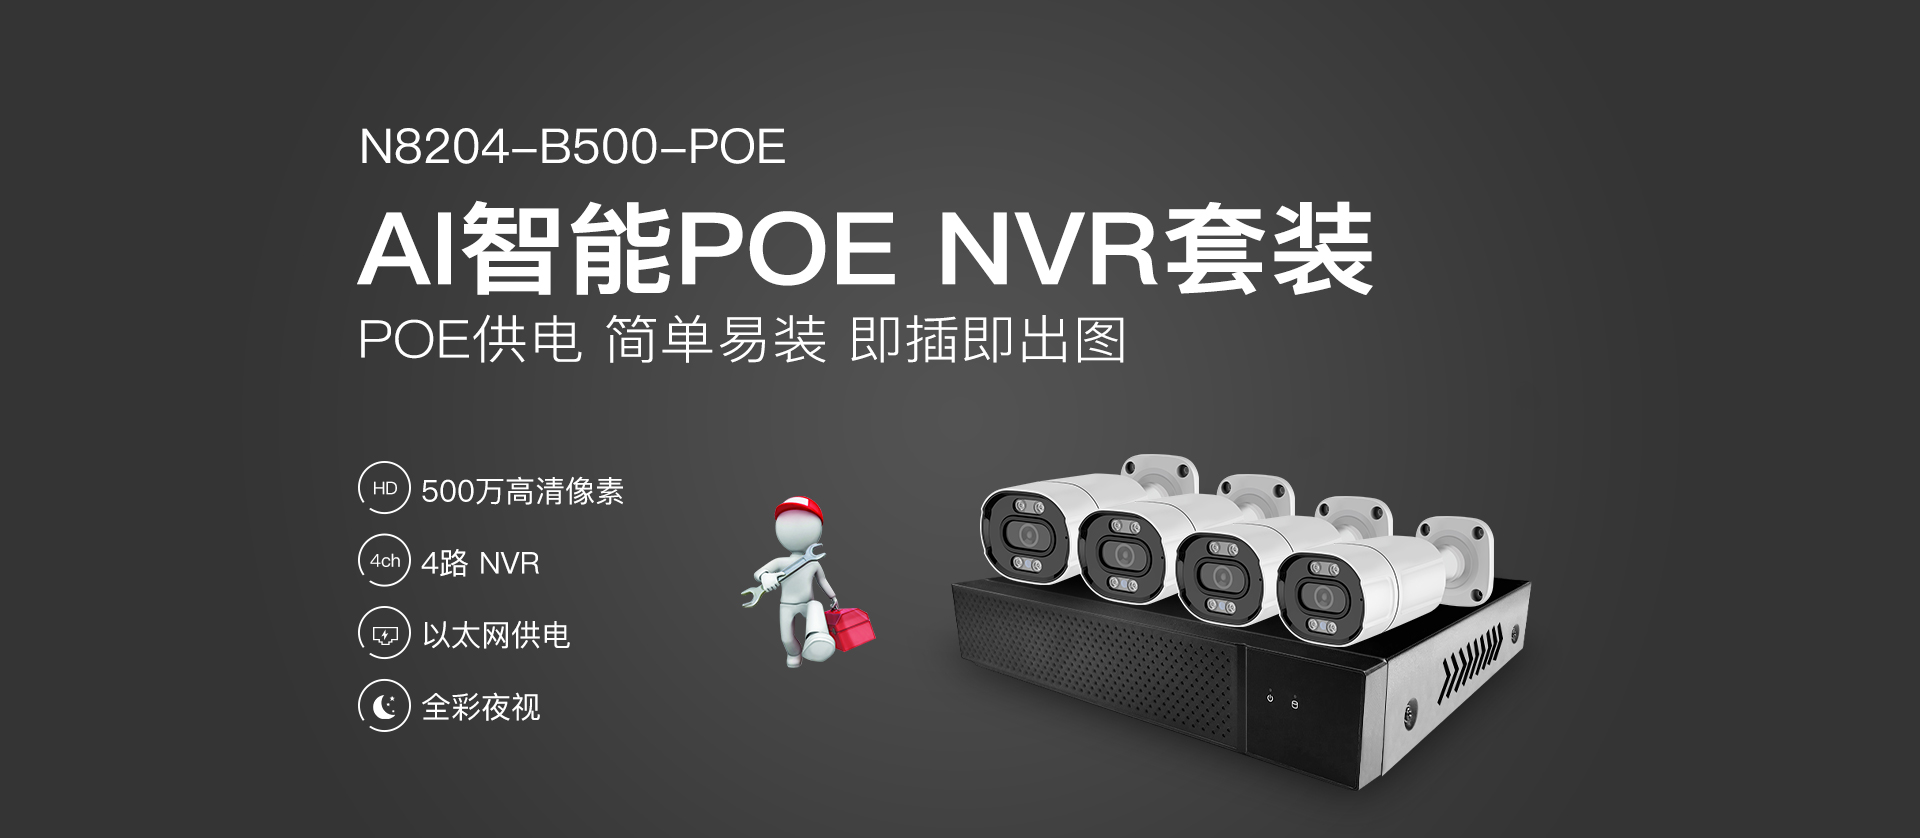 N8204-B500-POE插图